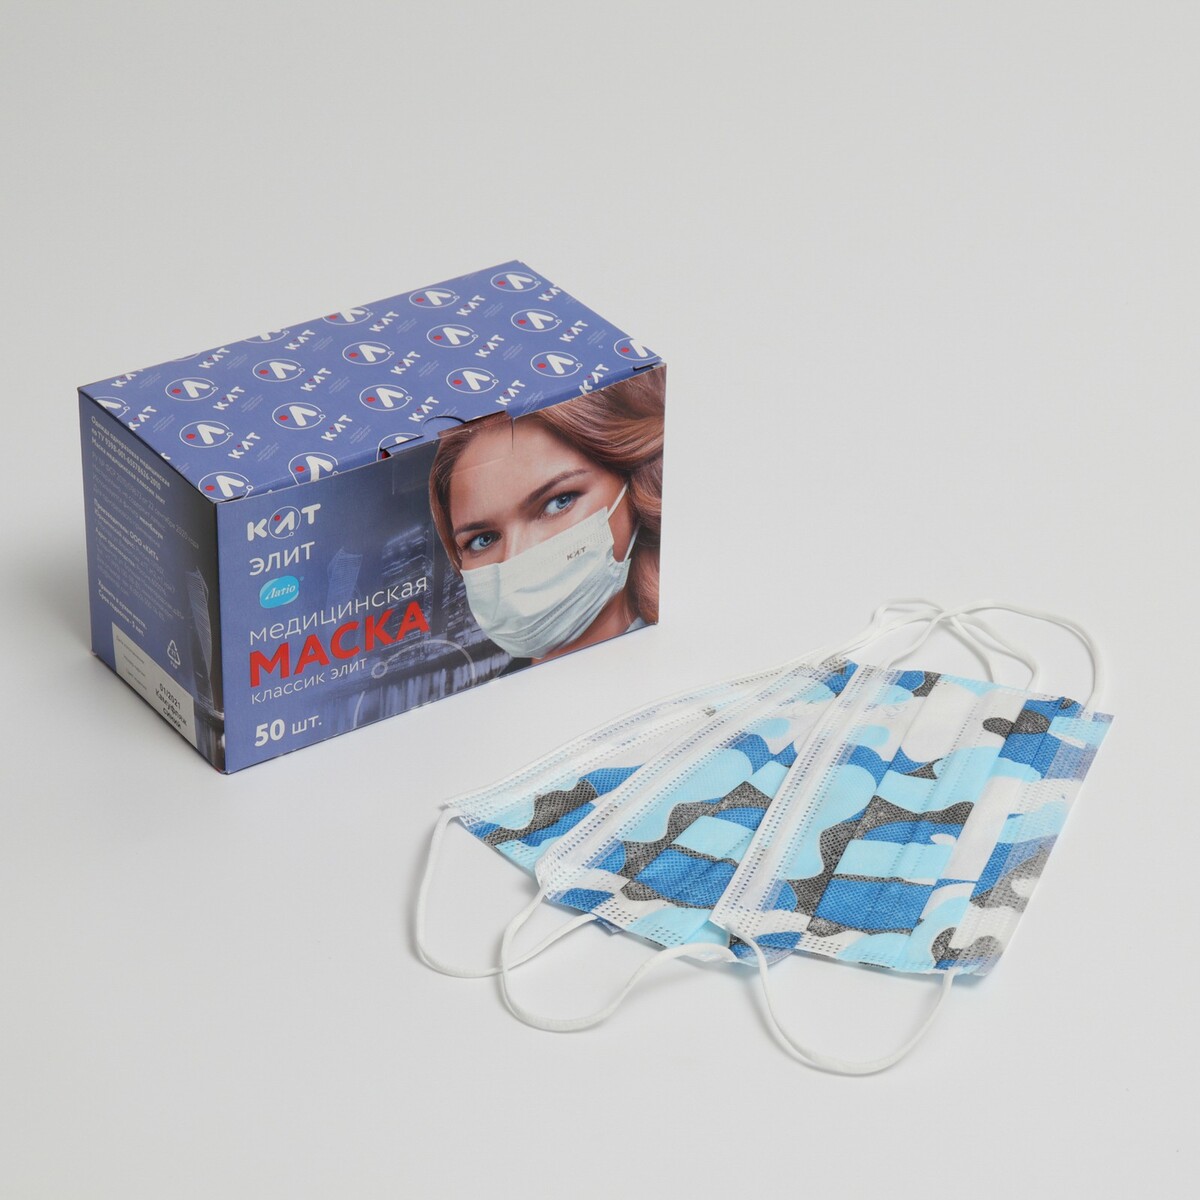 Маска медицинская latio синий камуфляж, 2 фиксатора формы, 50 шт картонный блок косметичка на молнии синий камуфляж